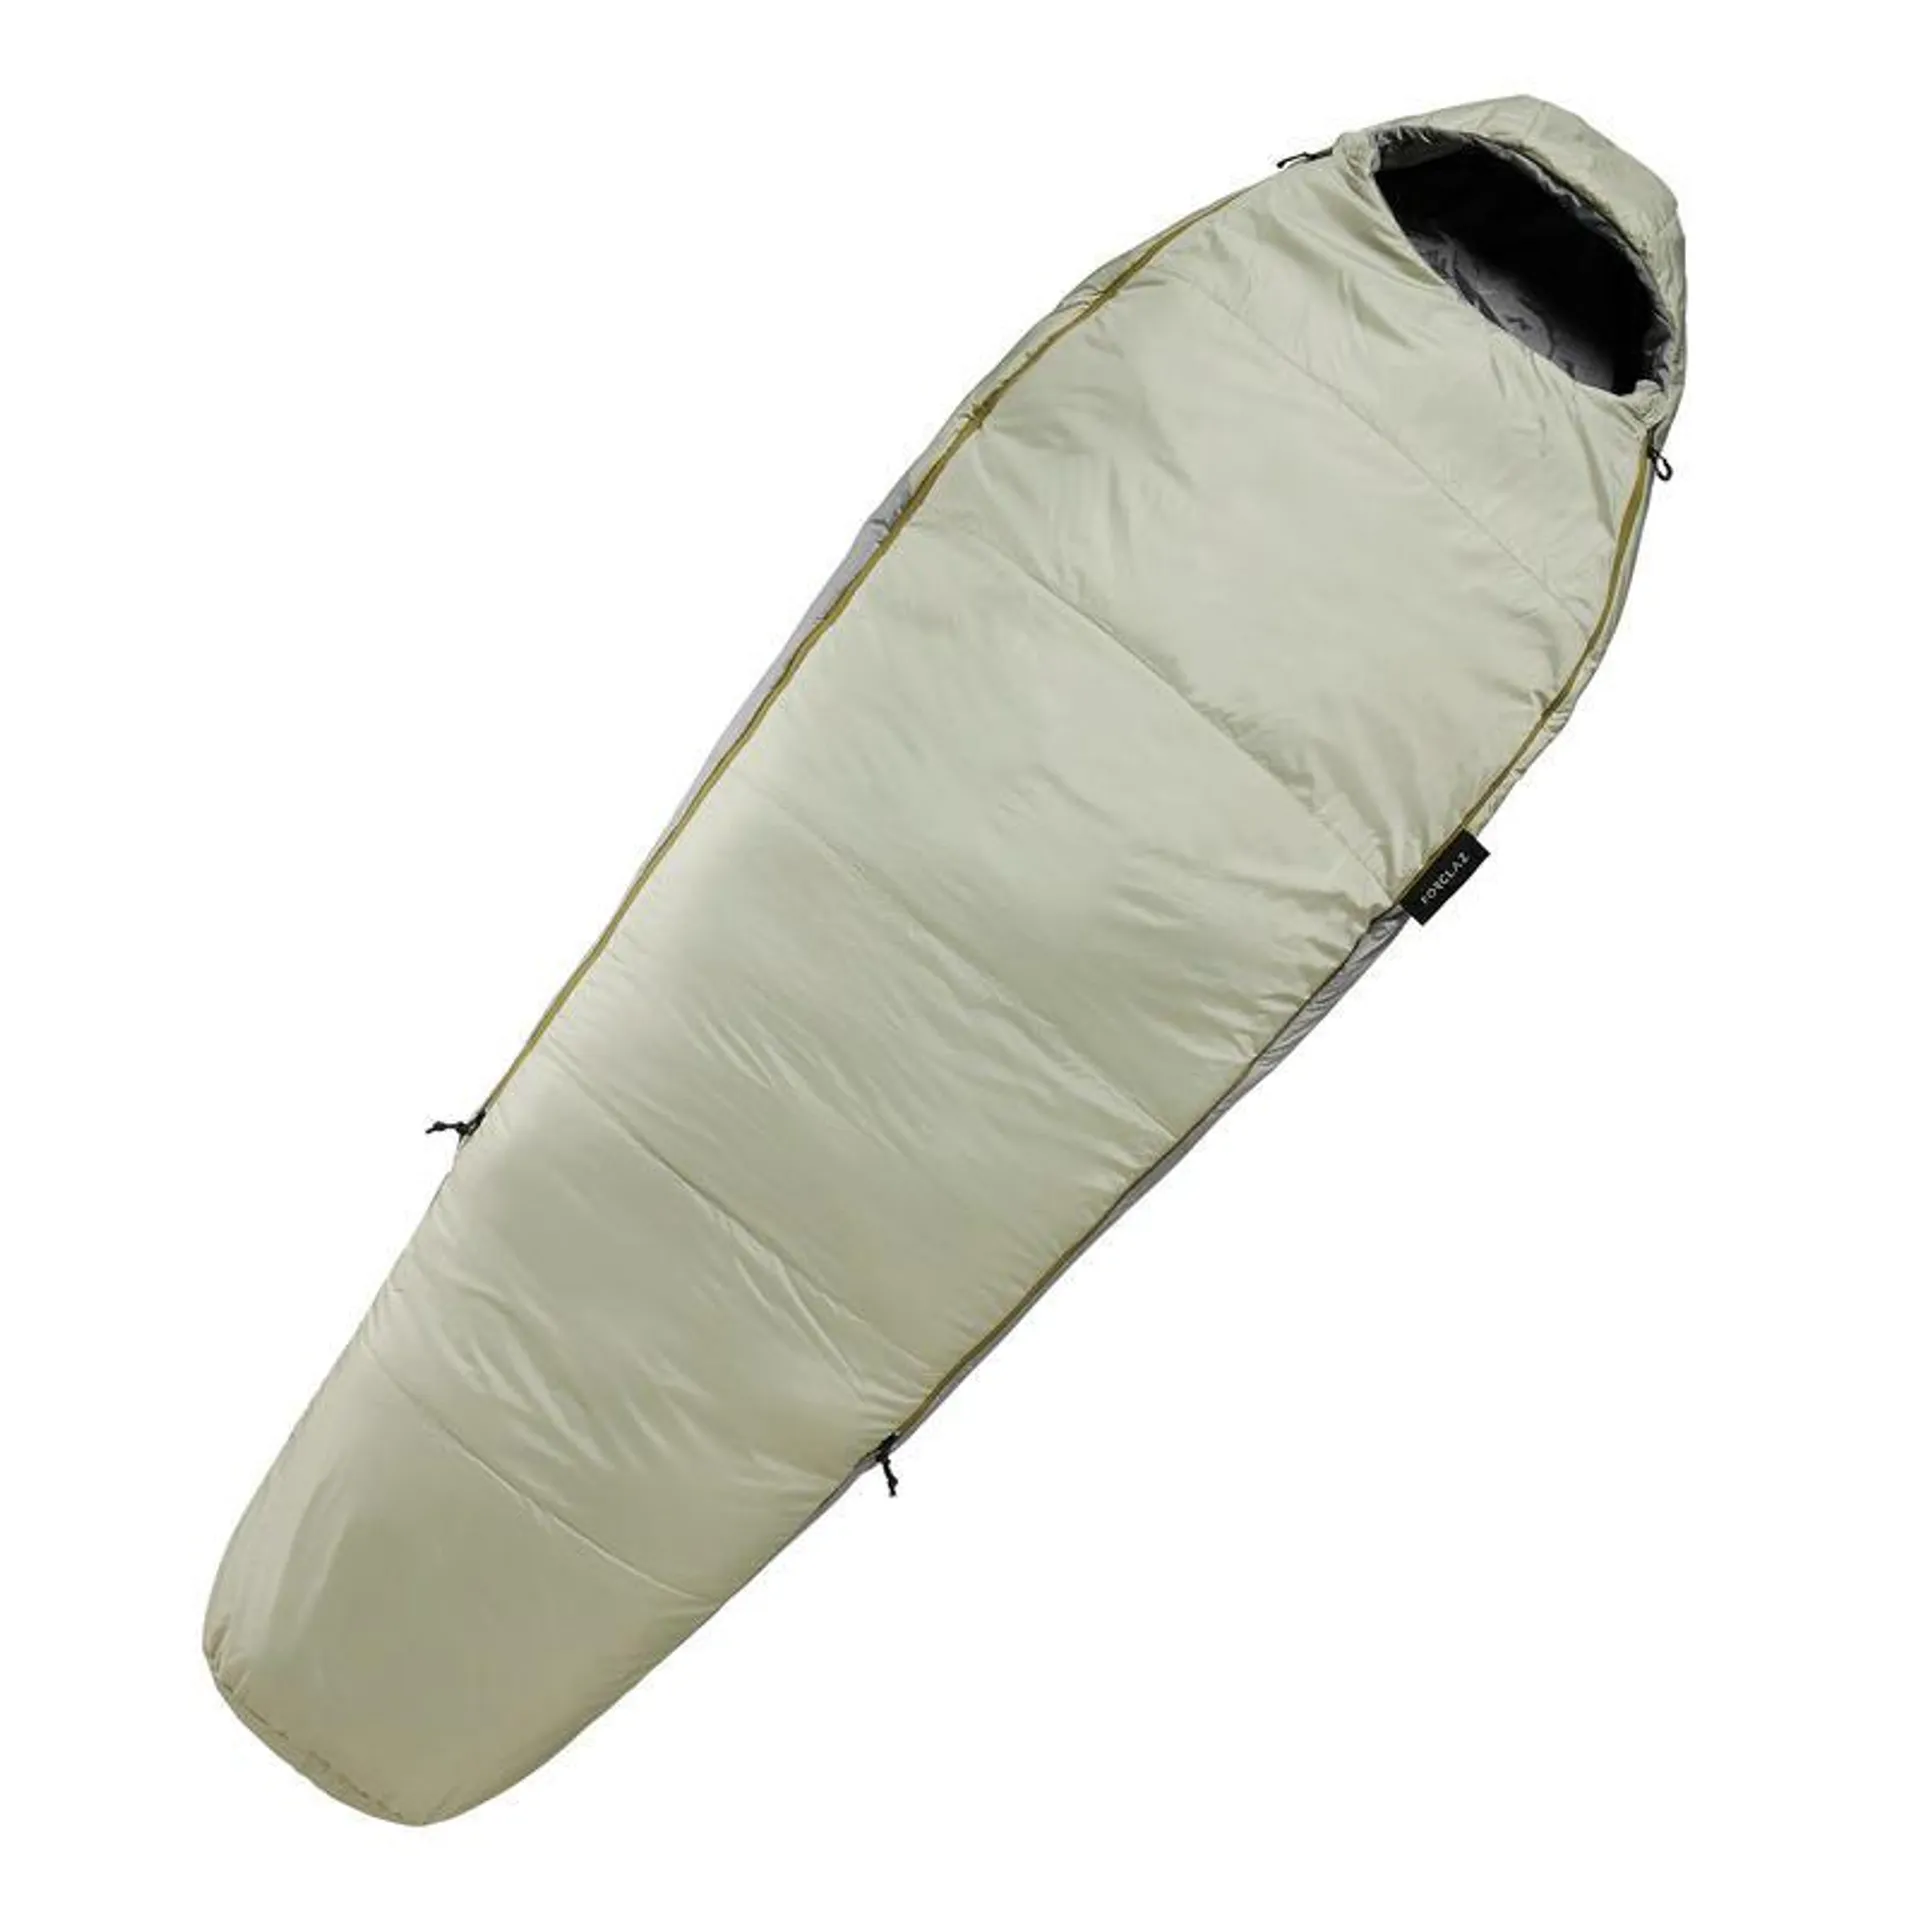 Saco de dormir guata 10 ºC confort forma momia Forclaz Trek 500 caqui